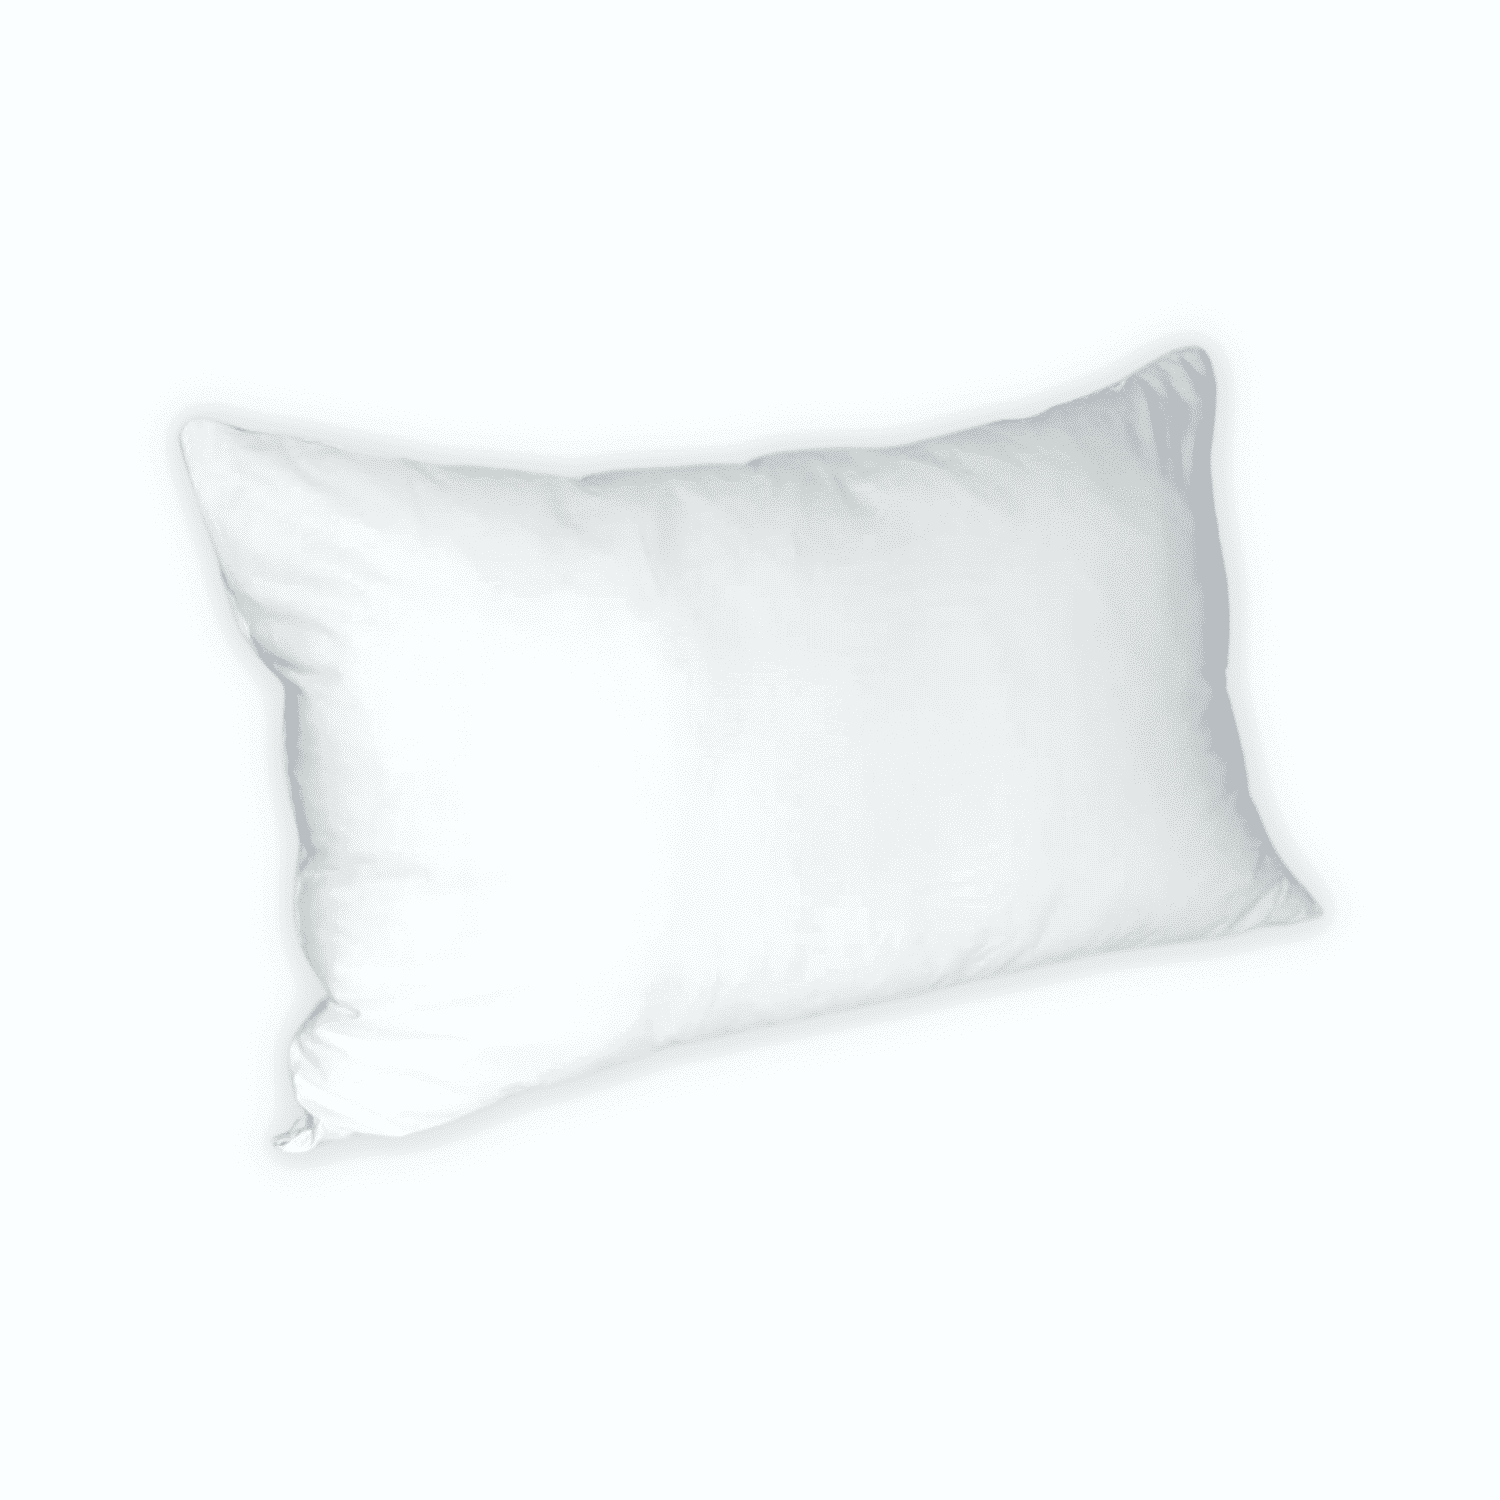 silver-soft-guanciale-cuscino-letto-media-densità-soft-soffice